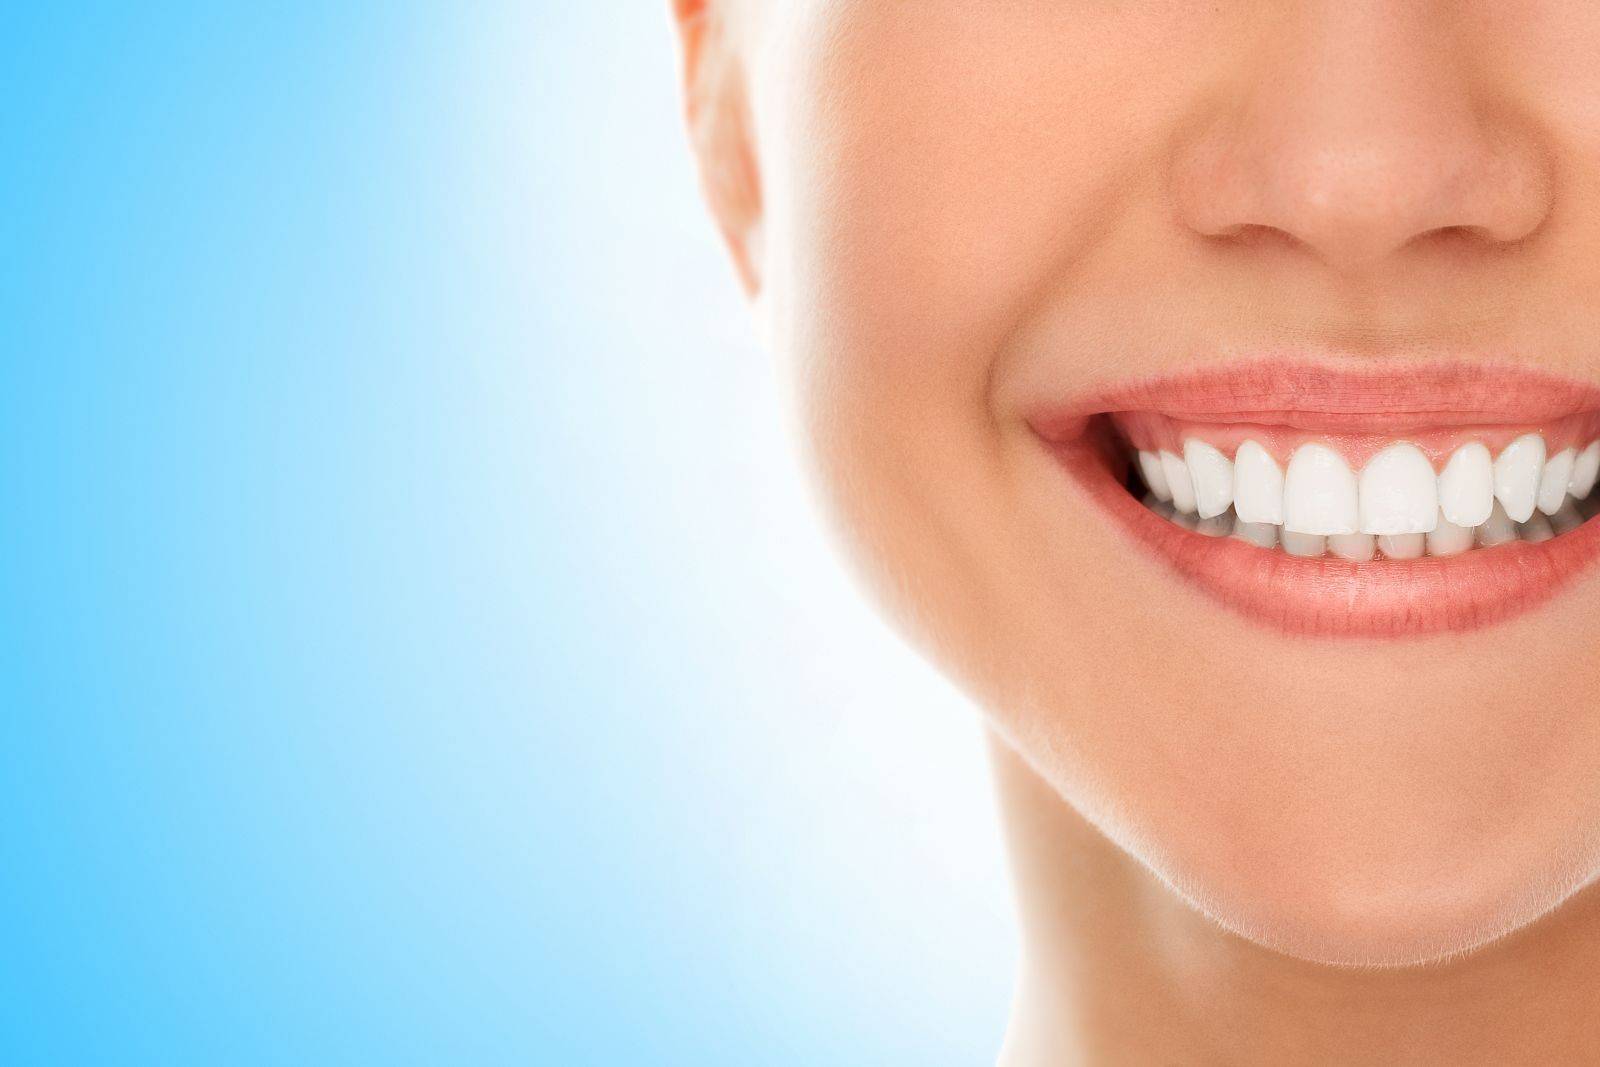 مزایای ایمپلنت کاشت دندان درمان های زیبایی دندان جراحی تمام فک پروتز متحرک ایمپلنت مزایای ایمپلنت کاشت دندان درمان های زیبایی دندان جراحی تمام فک پروتز متحرک ایمپلنت مزایای ایمپلنت کاشت دندان درمان های زیبایی دندان جراحی تمام فک پروتز متحرک ایمپلنت مزایای ایمپلنت کاشت دندان درمان های زیبایی دندان جراحی تمام فک پروتز متحرک ایمپلنت مزایای ایمپلنت کاشت دندان درمان های زیبایی دندان جراحی تمام فک پروتز متحرک ایمپلنت 